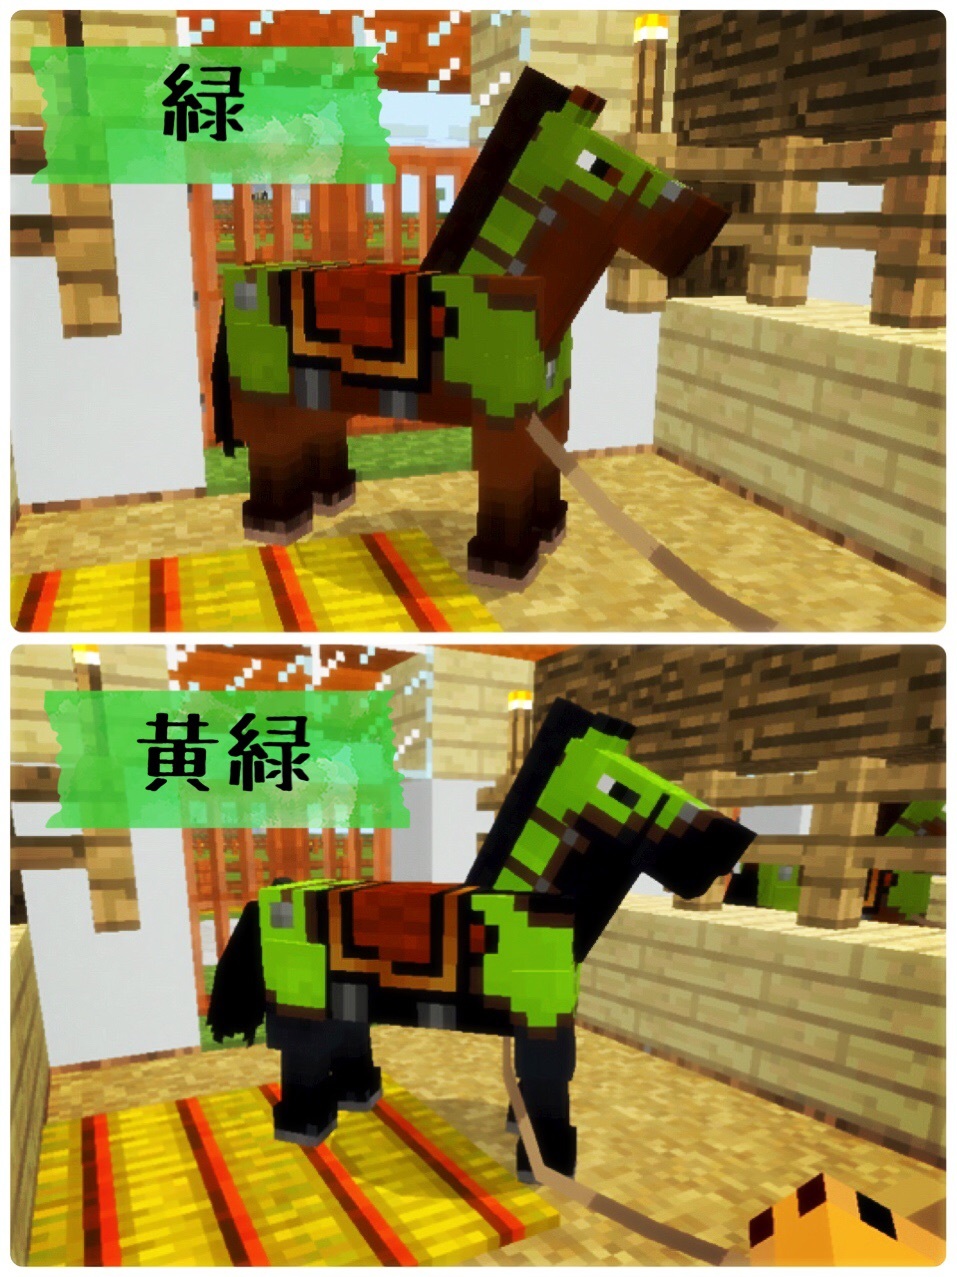 96頁 馬小屋のアレをアレするガオ 革の馬鎧の１６色染色 笑 Nohohon Minecraft